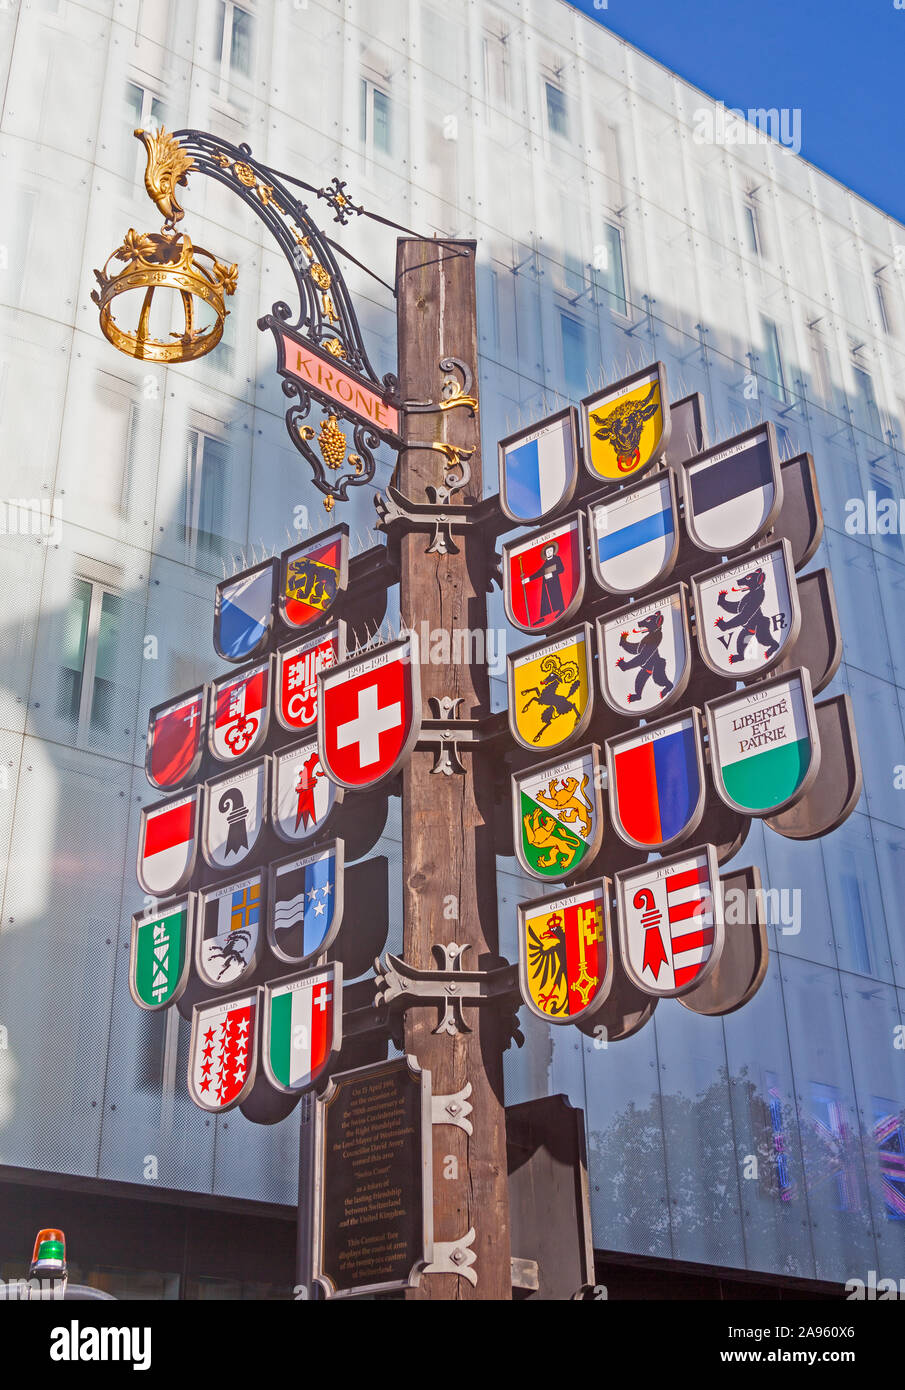 Londra, Leicester Square. La struttura cantonale in tribunale svizzero, raffiguranti i 26 Cantoni della Confederazione svizzera. Foto Stock